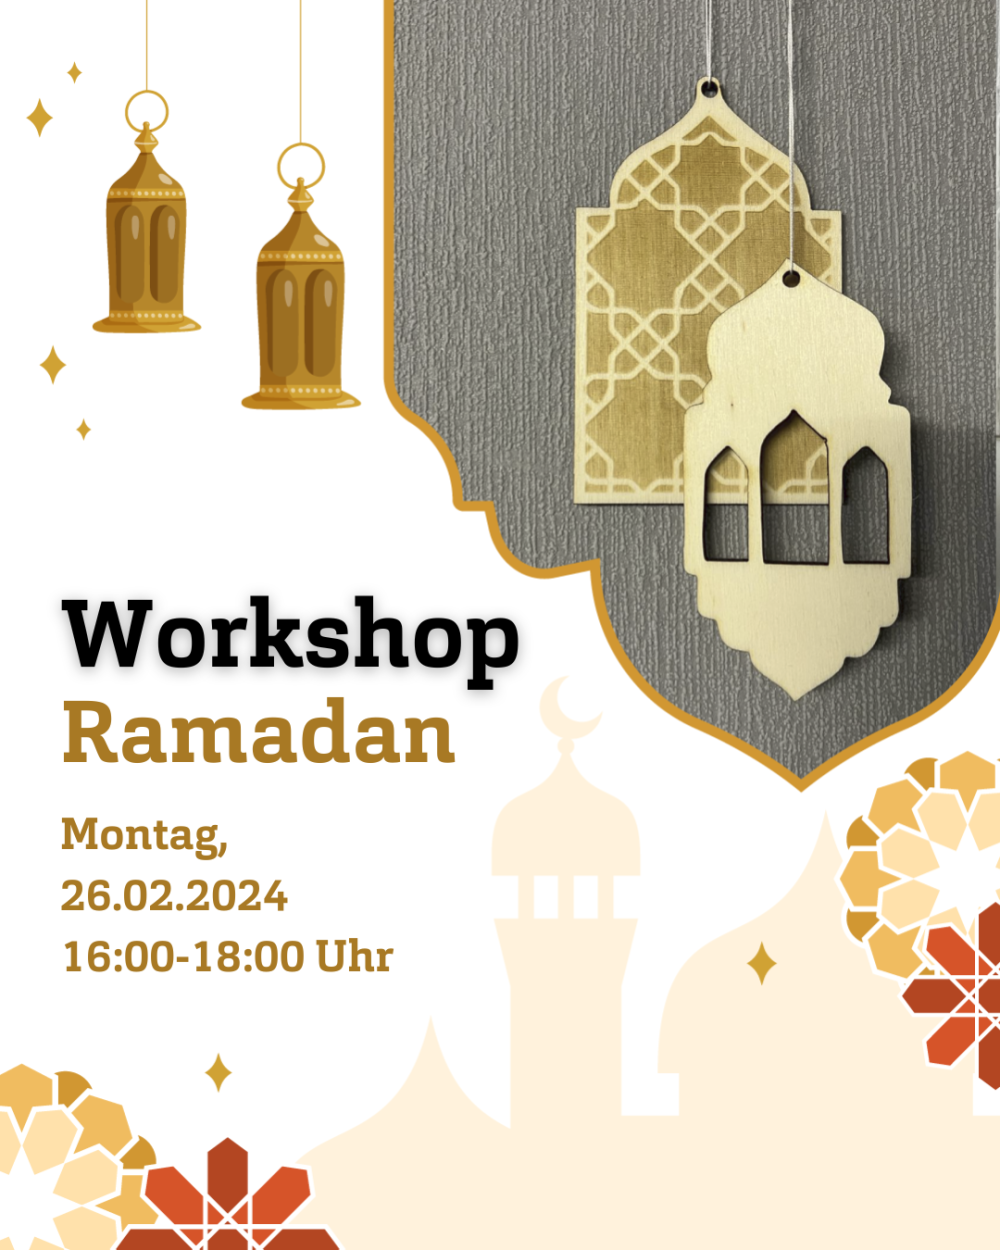 Grafische Darstellung von hängenden Laternen und Holzschnitten von Moscheen. Darunter der Schriftzug: "Workshop Ramadan. Montag, 26.02.2024, 16:00-18:00 Uhr"